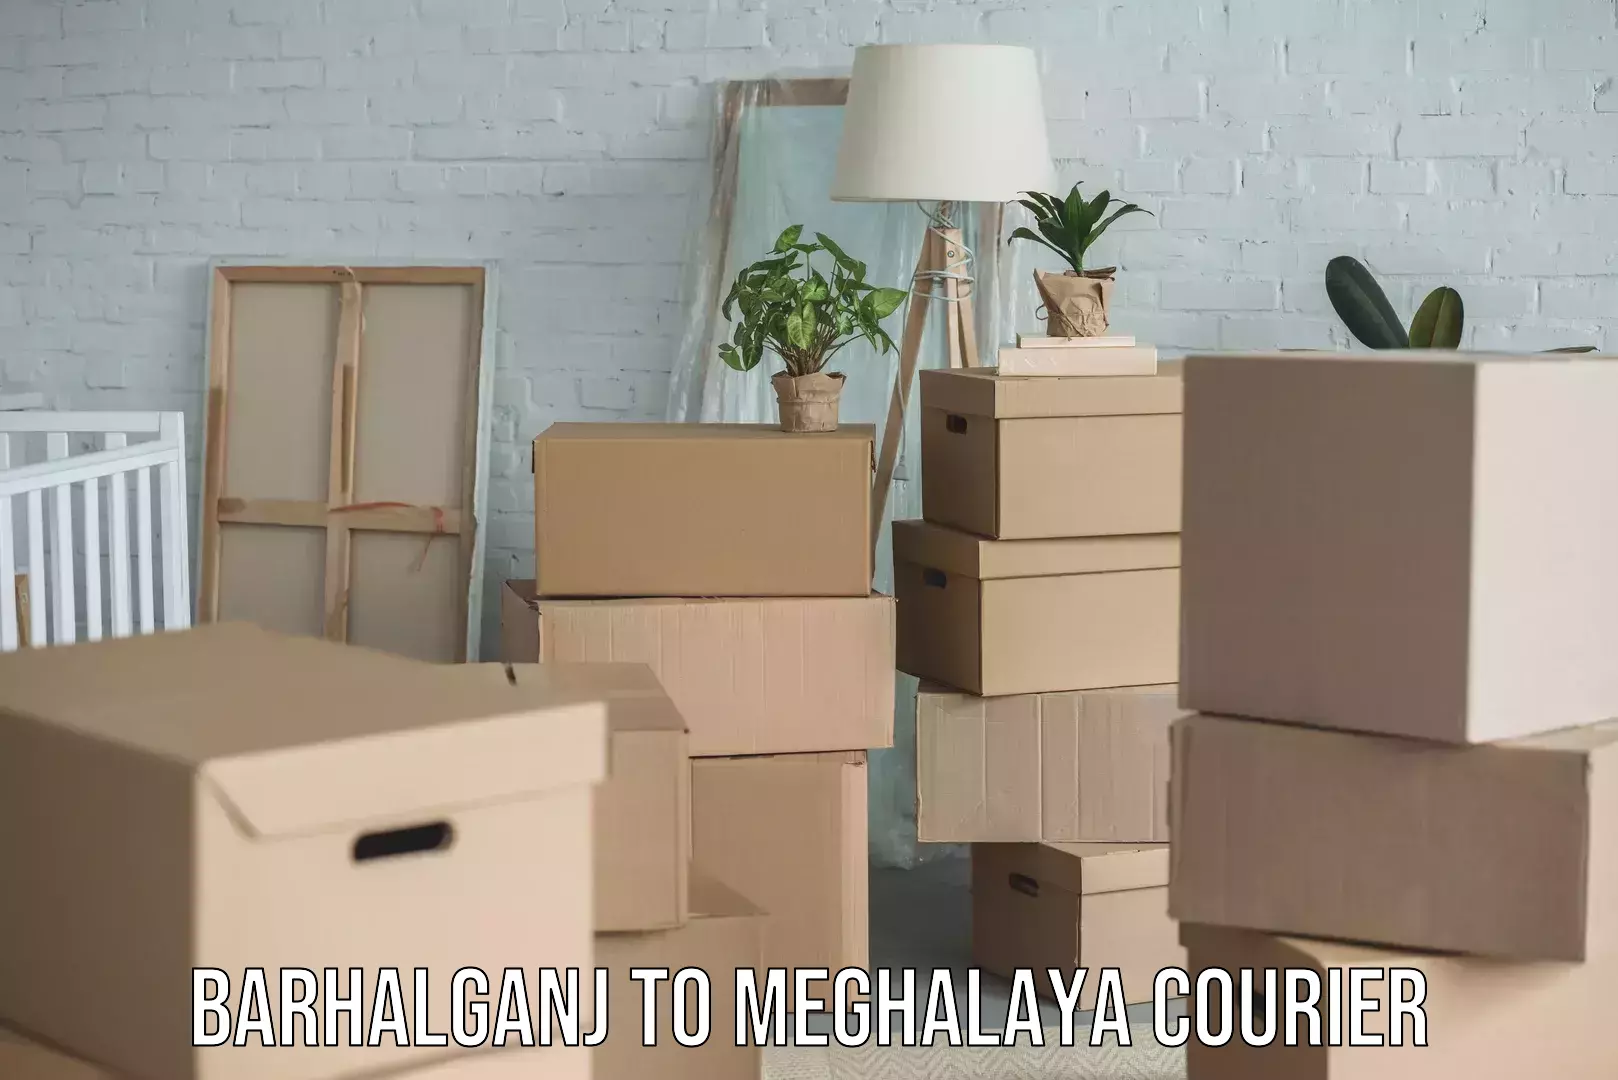 Nationwide delivery network Barhalganj to Meghalaya